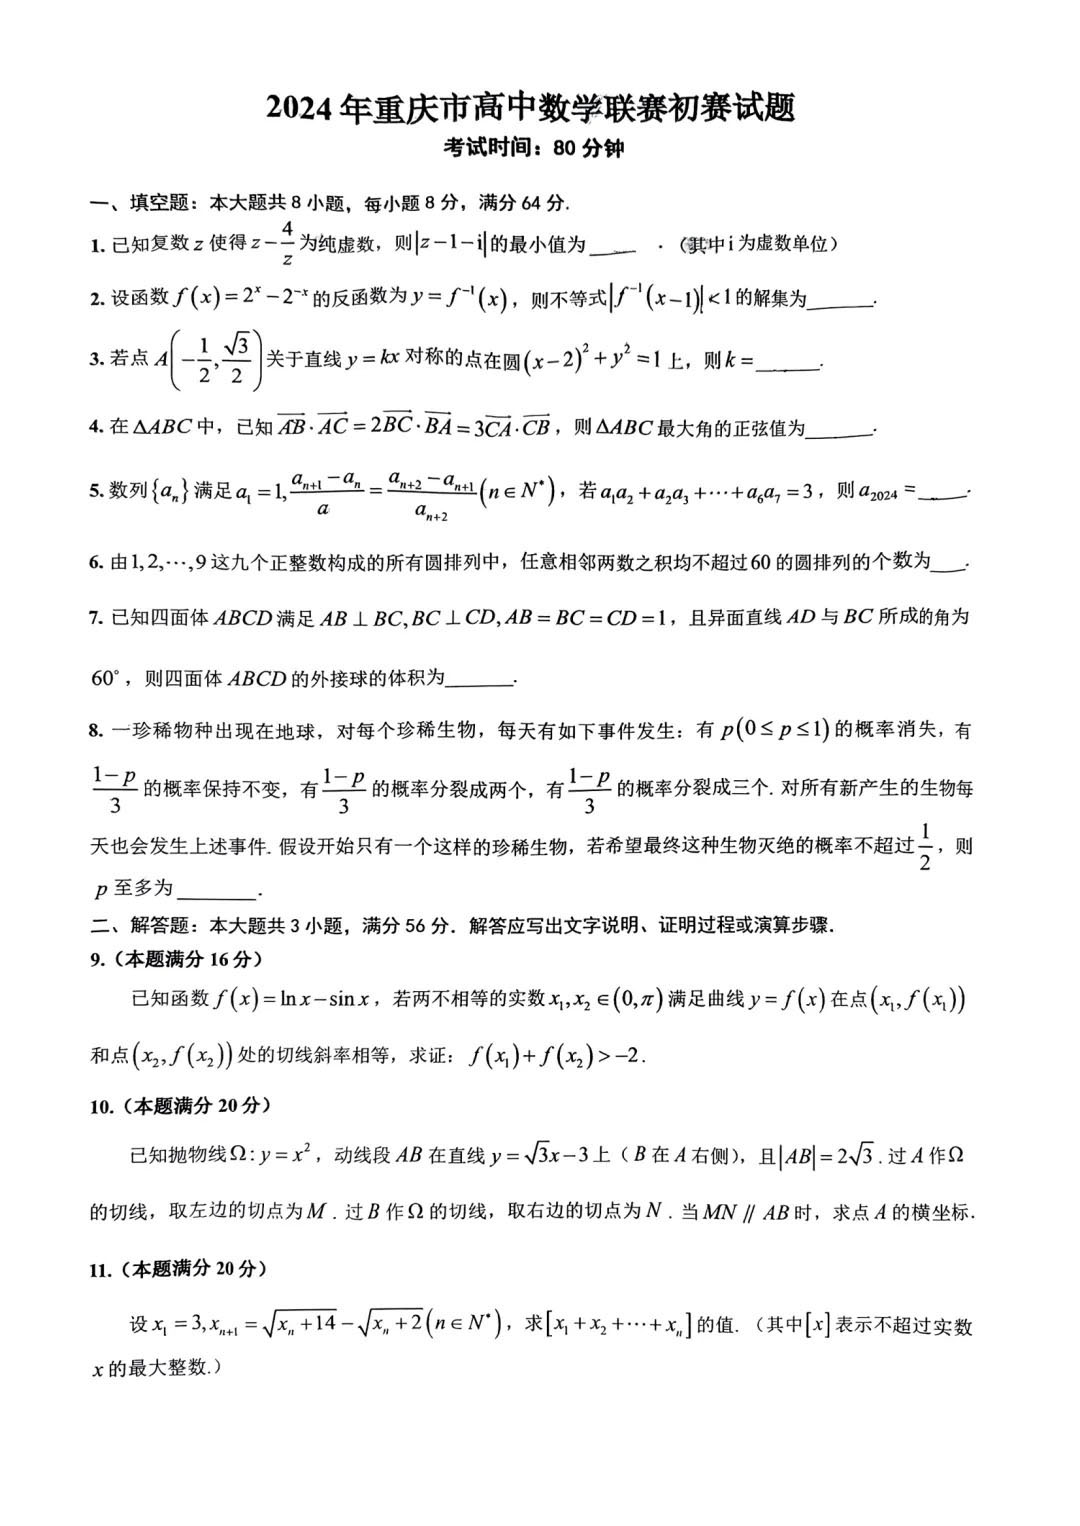 2024年重庆市高中数学联赛初赛试题及答案解析